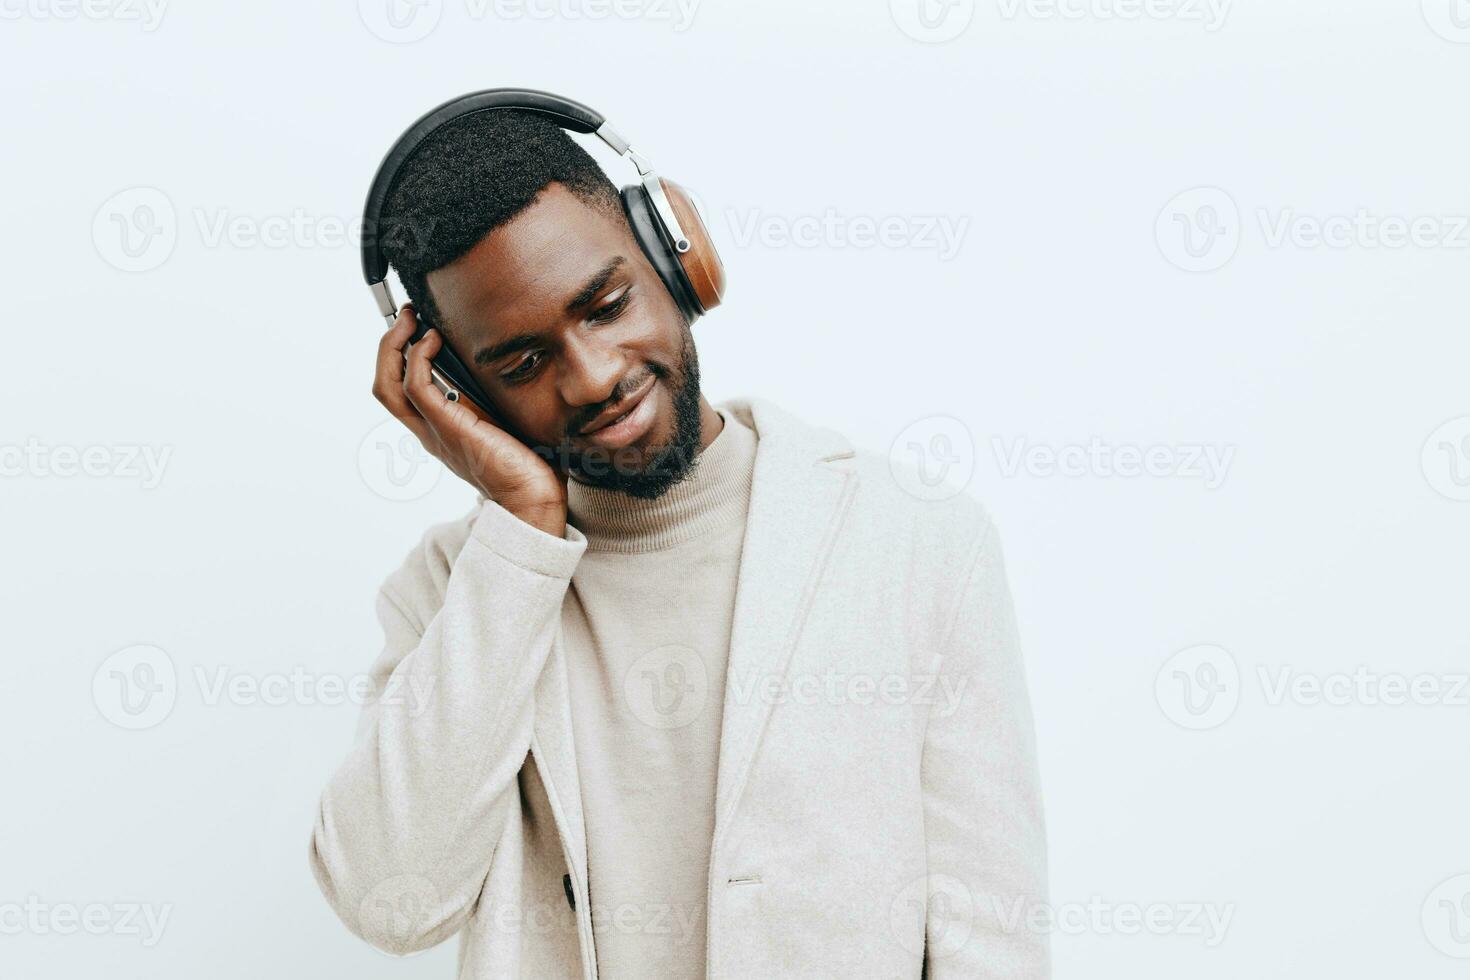 Contexte homme Masculin mode portrait dj américain la musique écouteurs africain émotion gars noir photo